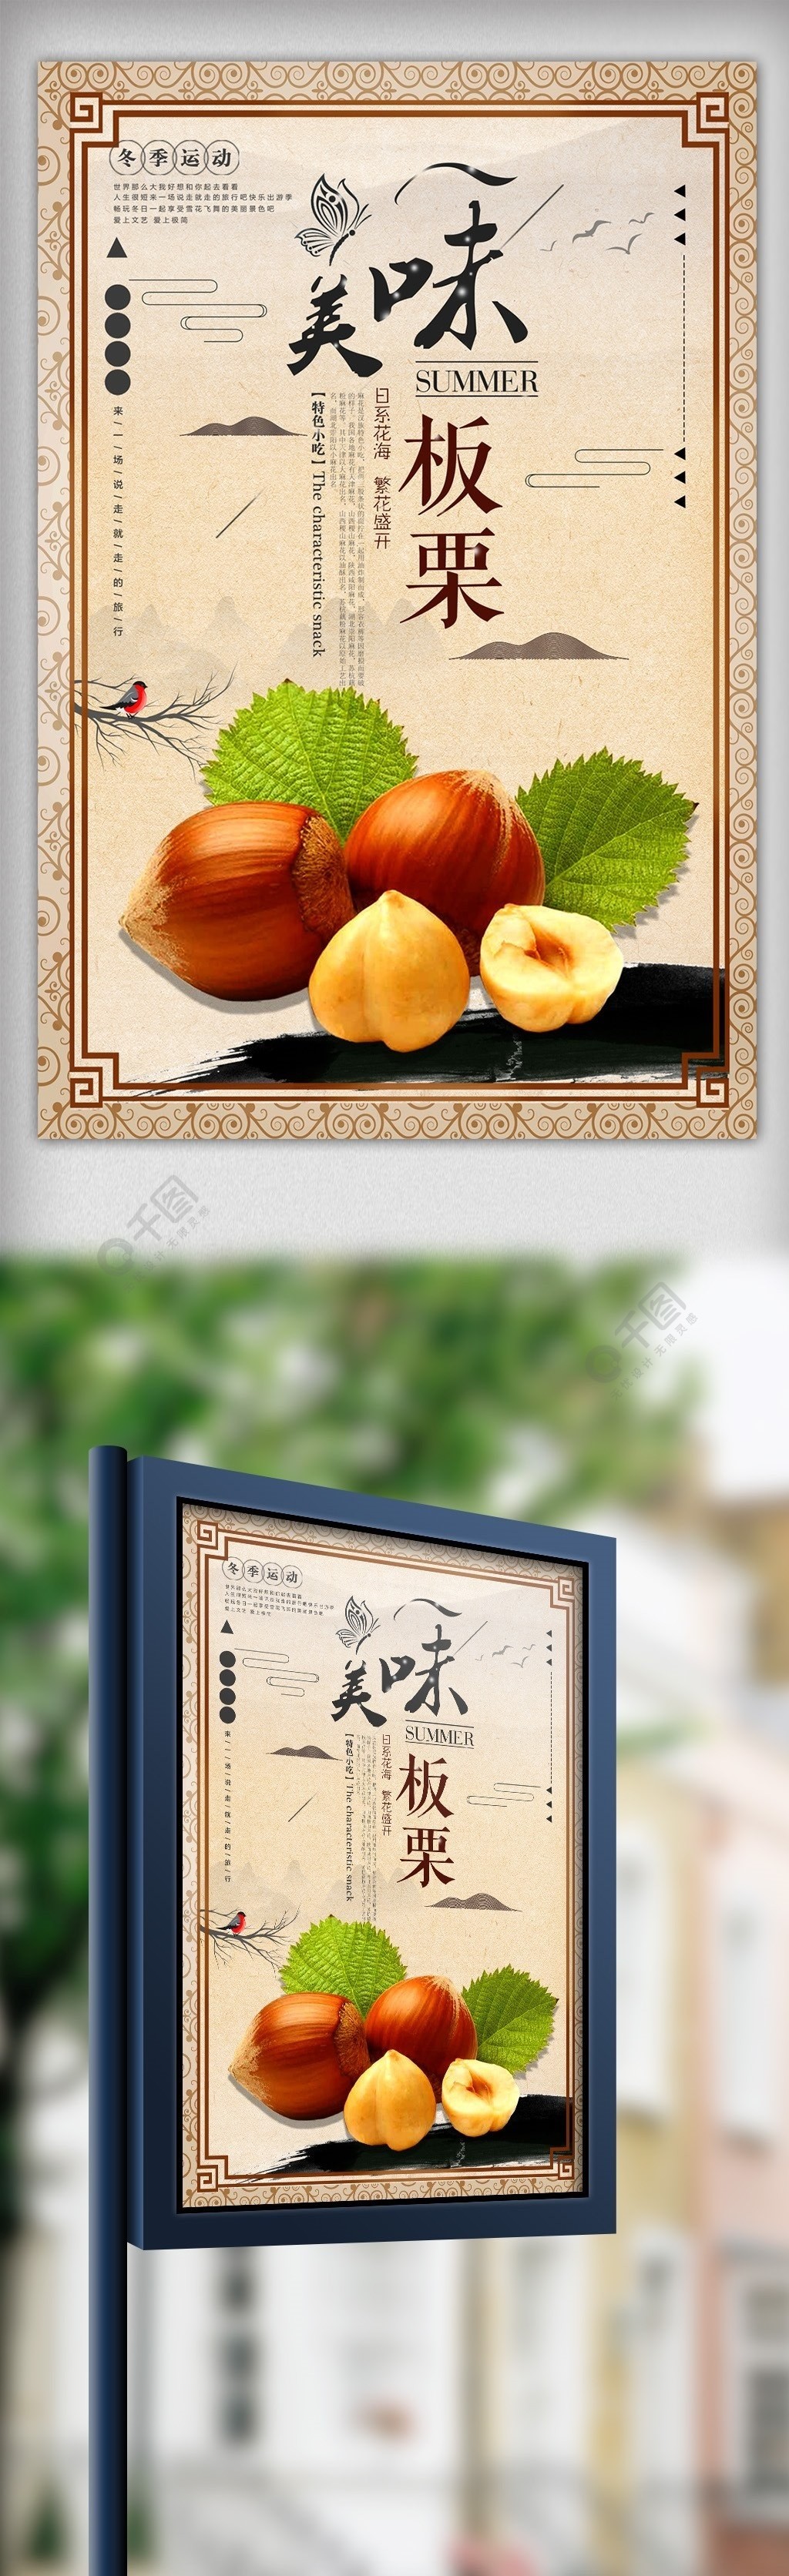 复古糖炒板栗栗子传统美食海报2年前发布